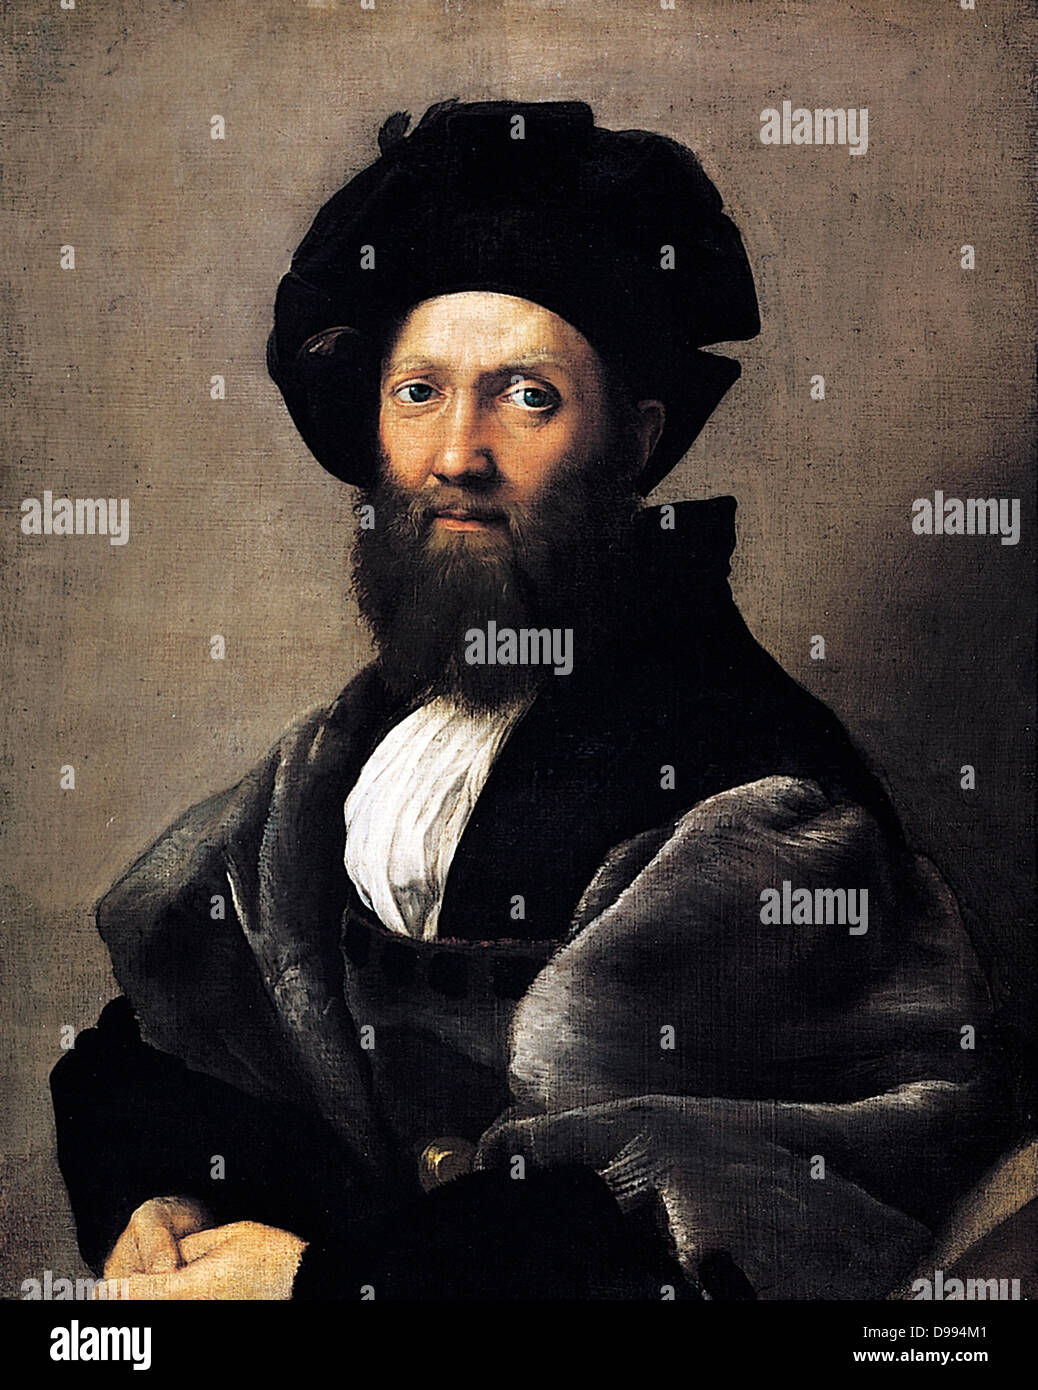 Baldassare Castiglione 1478-1529 italienischer Diplomat, Porträt von Raphael Sanzio da Urbino (6. April oder März 28, 1483 - April 6, 1520), italienischer Maler und Architekt der Renaissance. Malte 1514-1515 Stockfoto